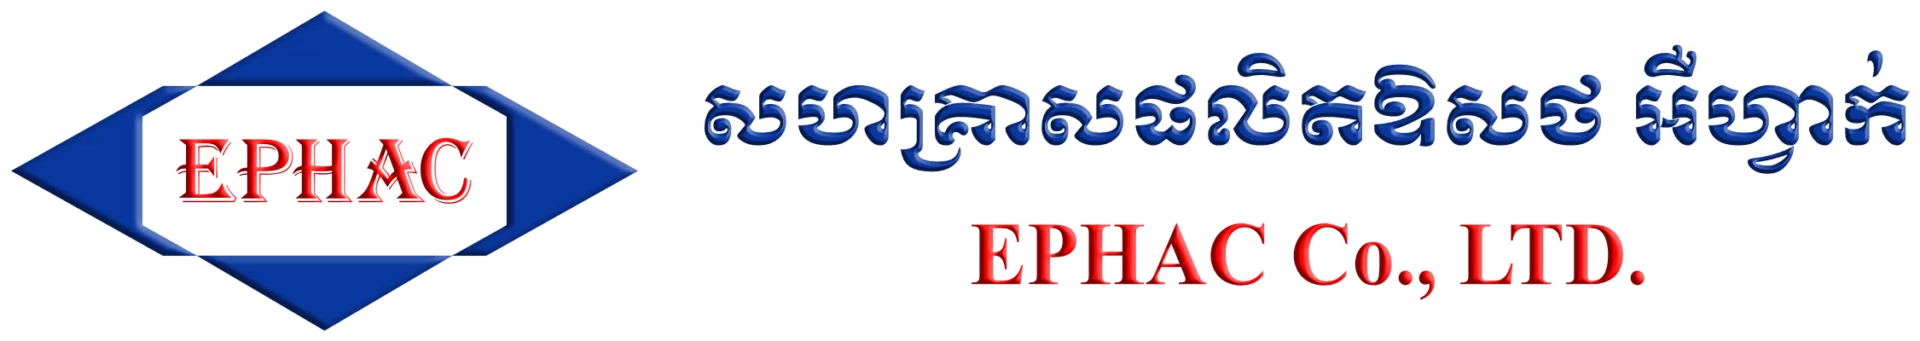 EPHAC Co.,LTD.